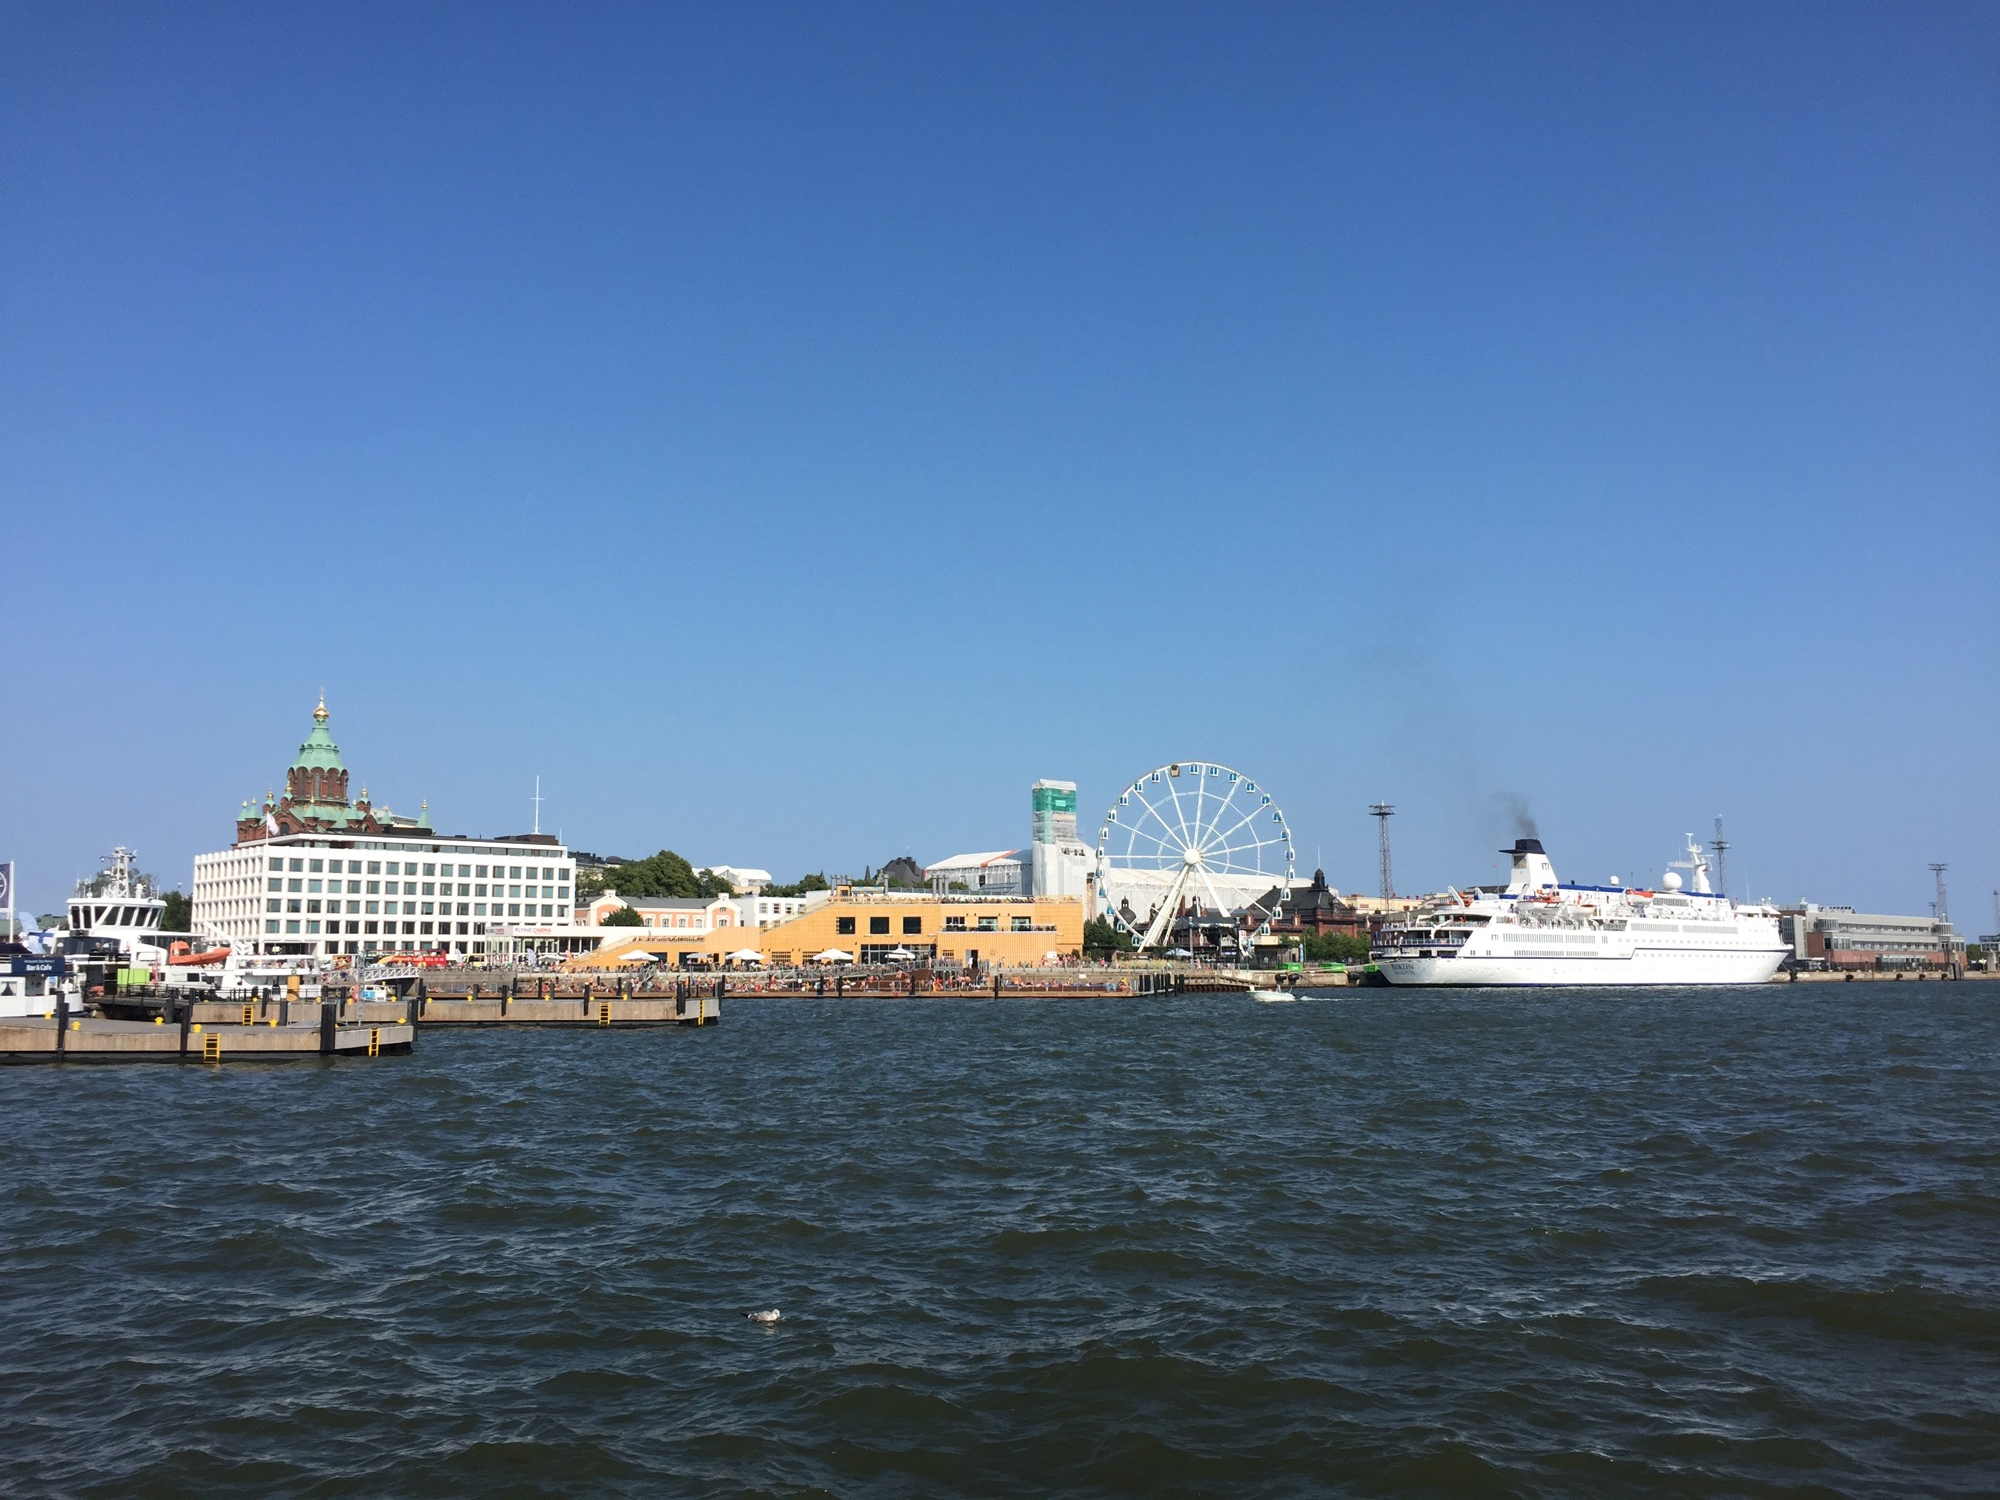 Aussicht auf die Hafenpromenade von Helsinki inklusive Riesenrad und Kreuzfahrtschiff